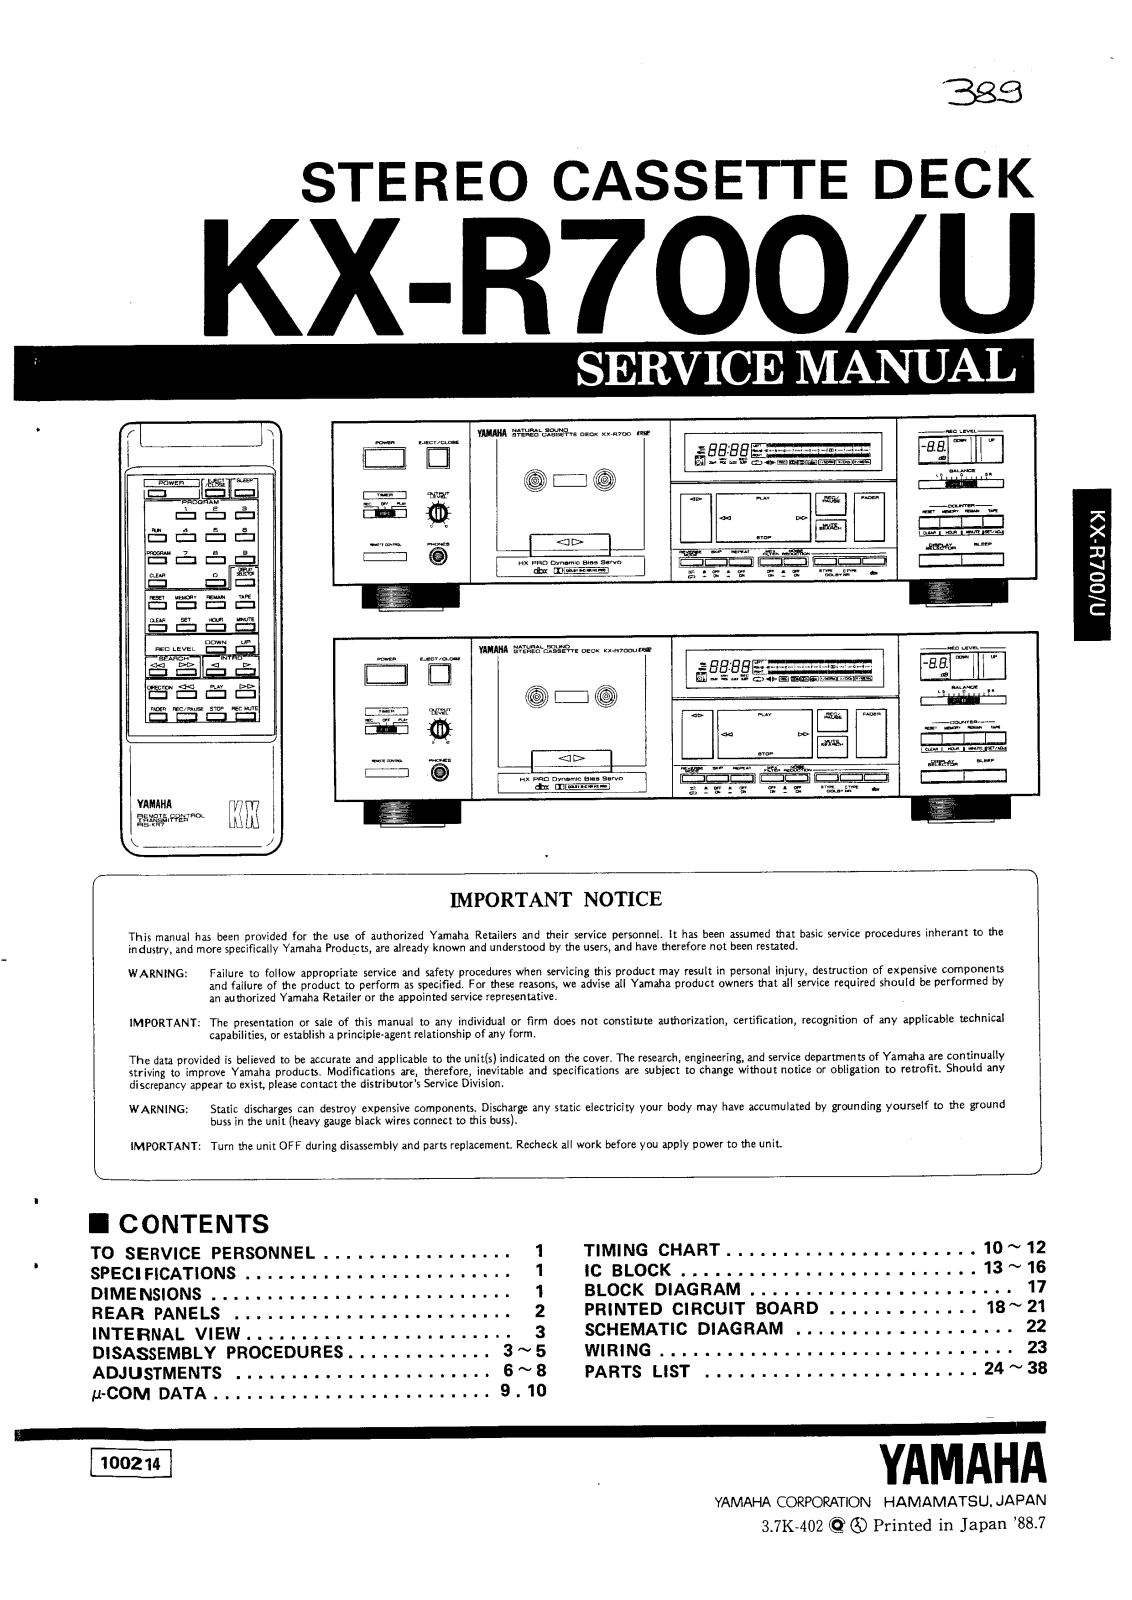 Yamaha KXR-700 Service Manual